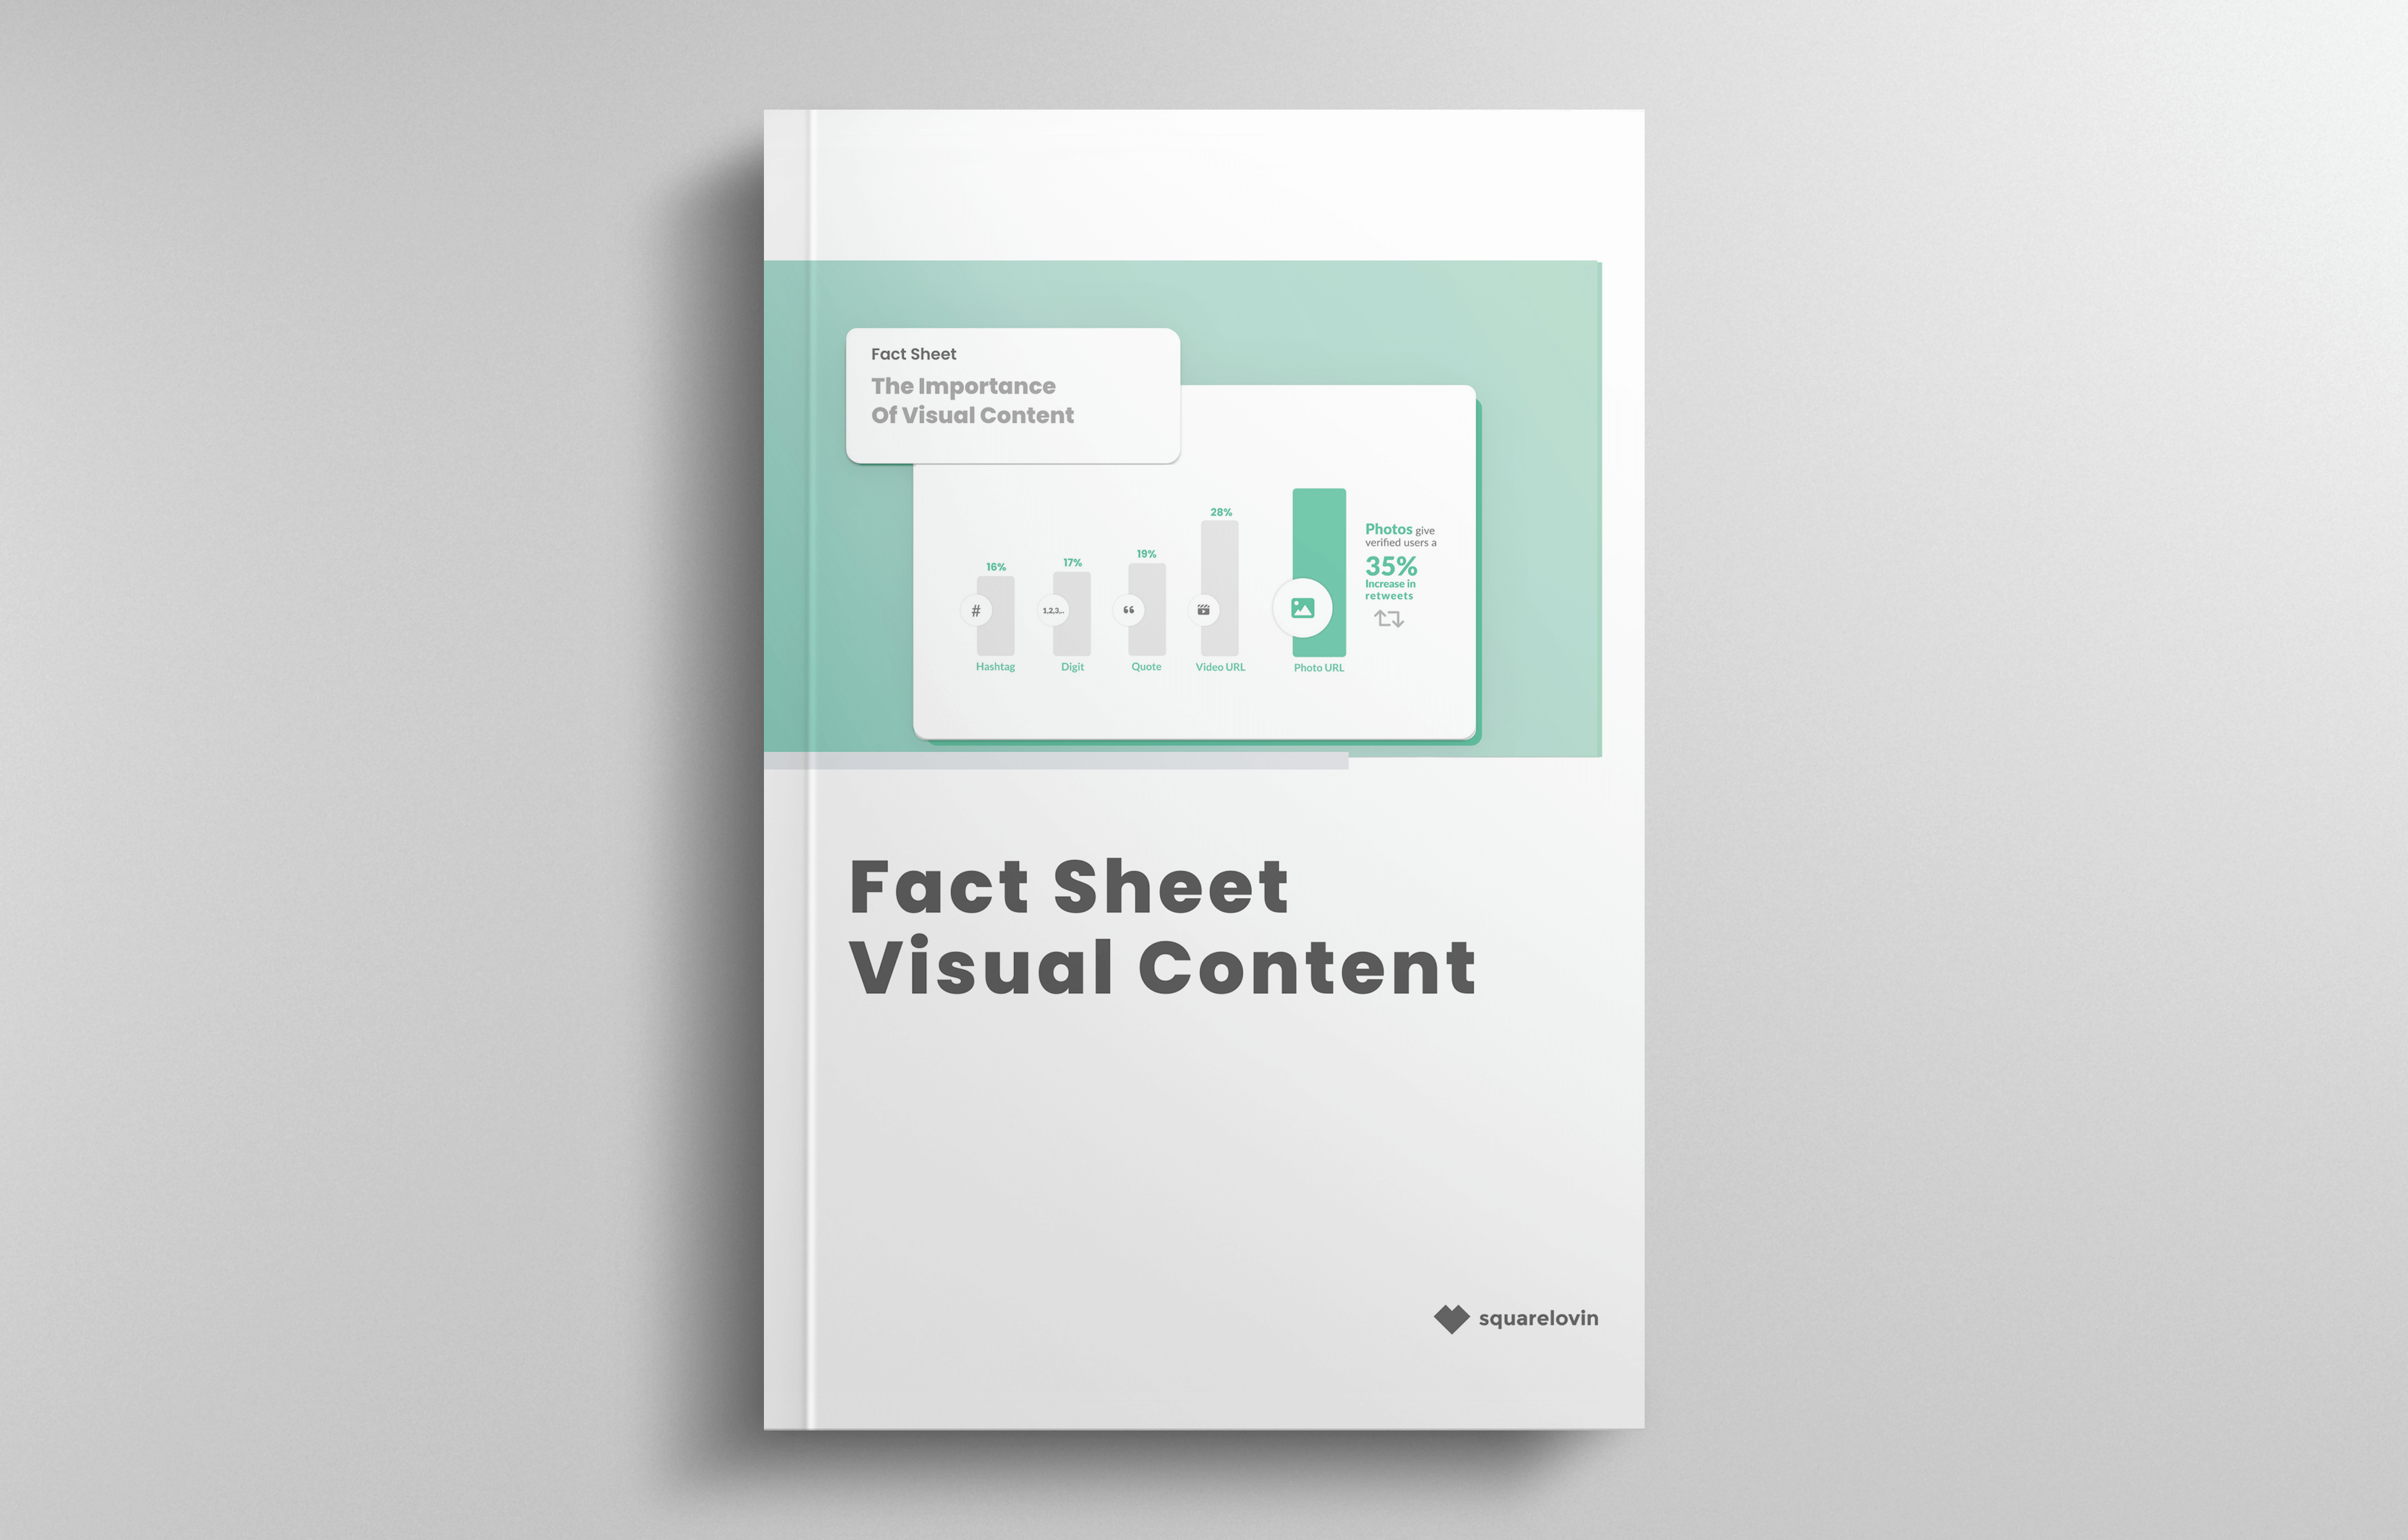 squarelovin_fact sheet_visual content_header_en